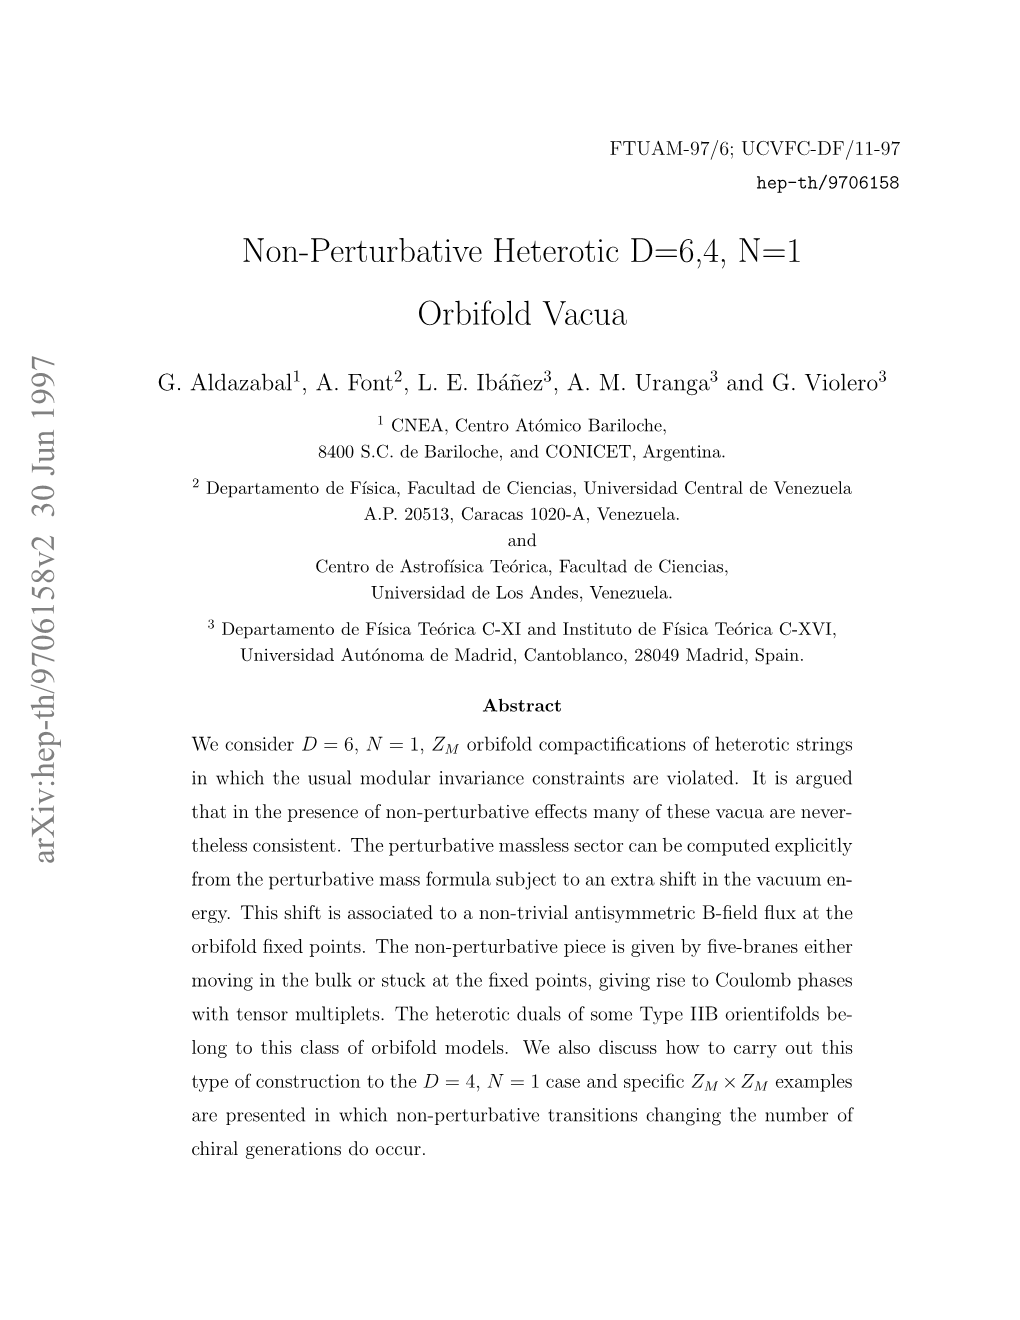 Non-Perturbative Heterotic D= 6, 4 Orbifold Vacua